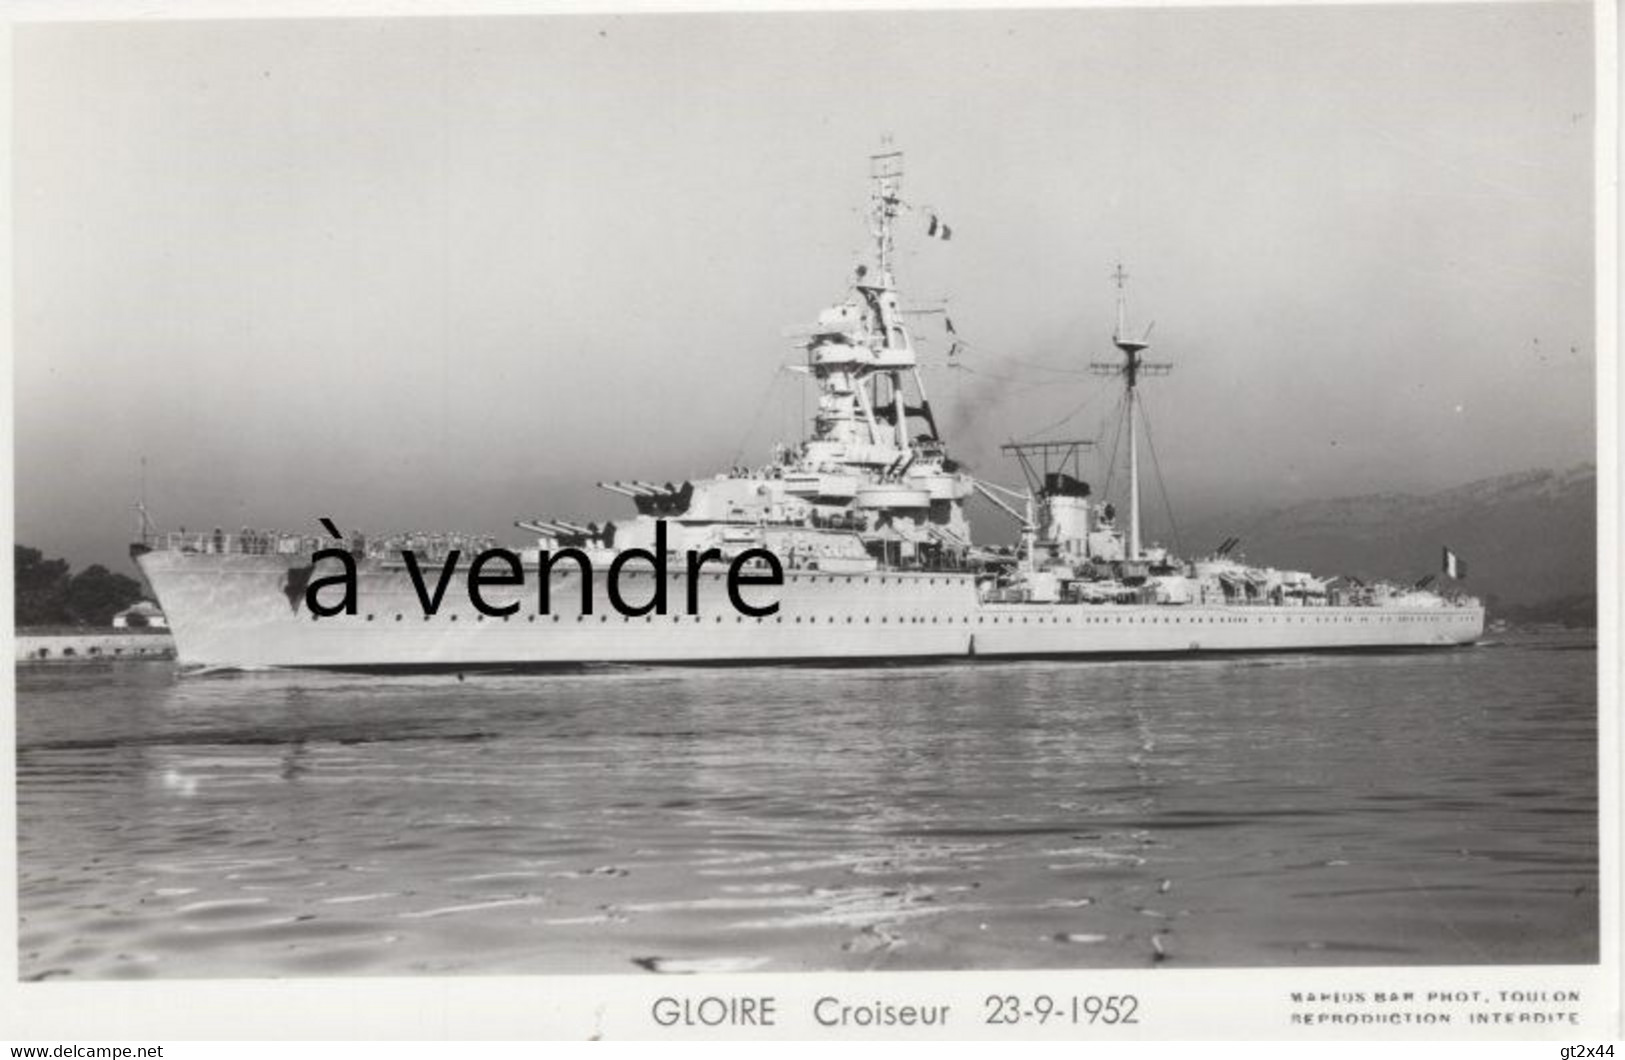 GLOIRE, Croiseur, 23-9-1952 - Warships